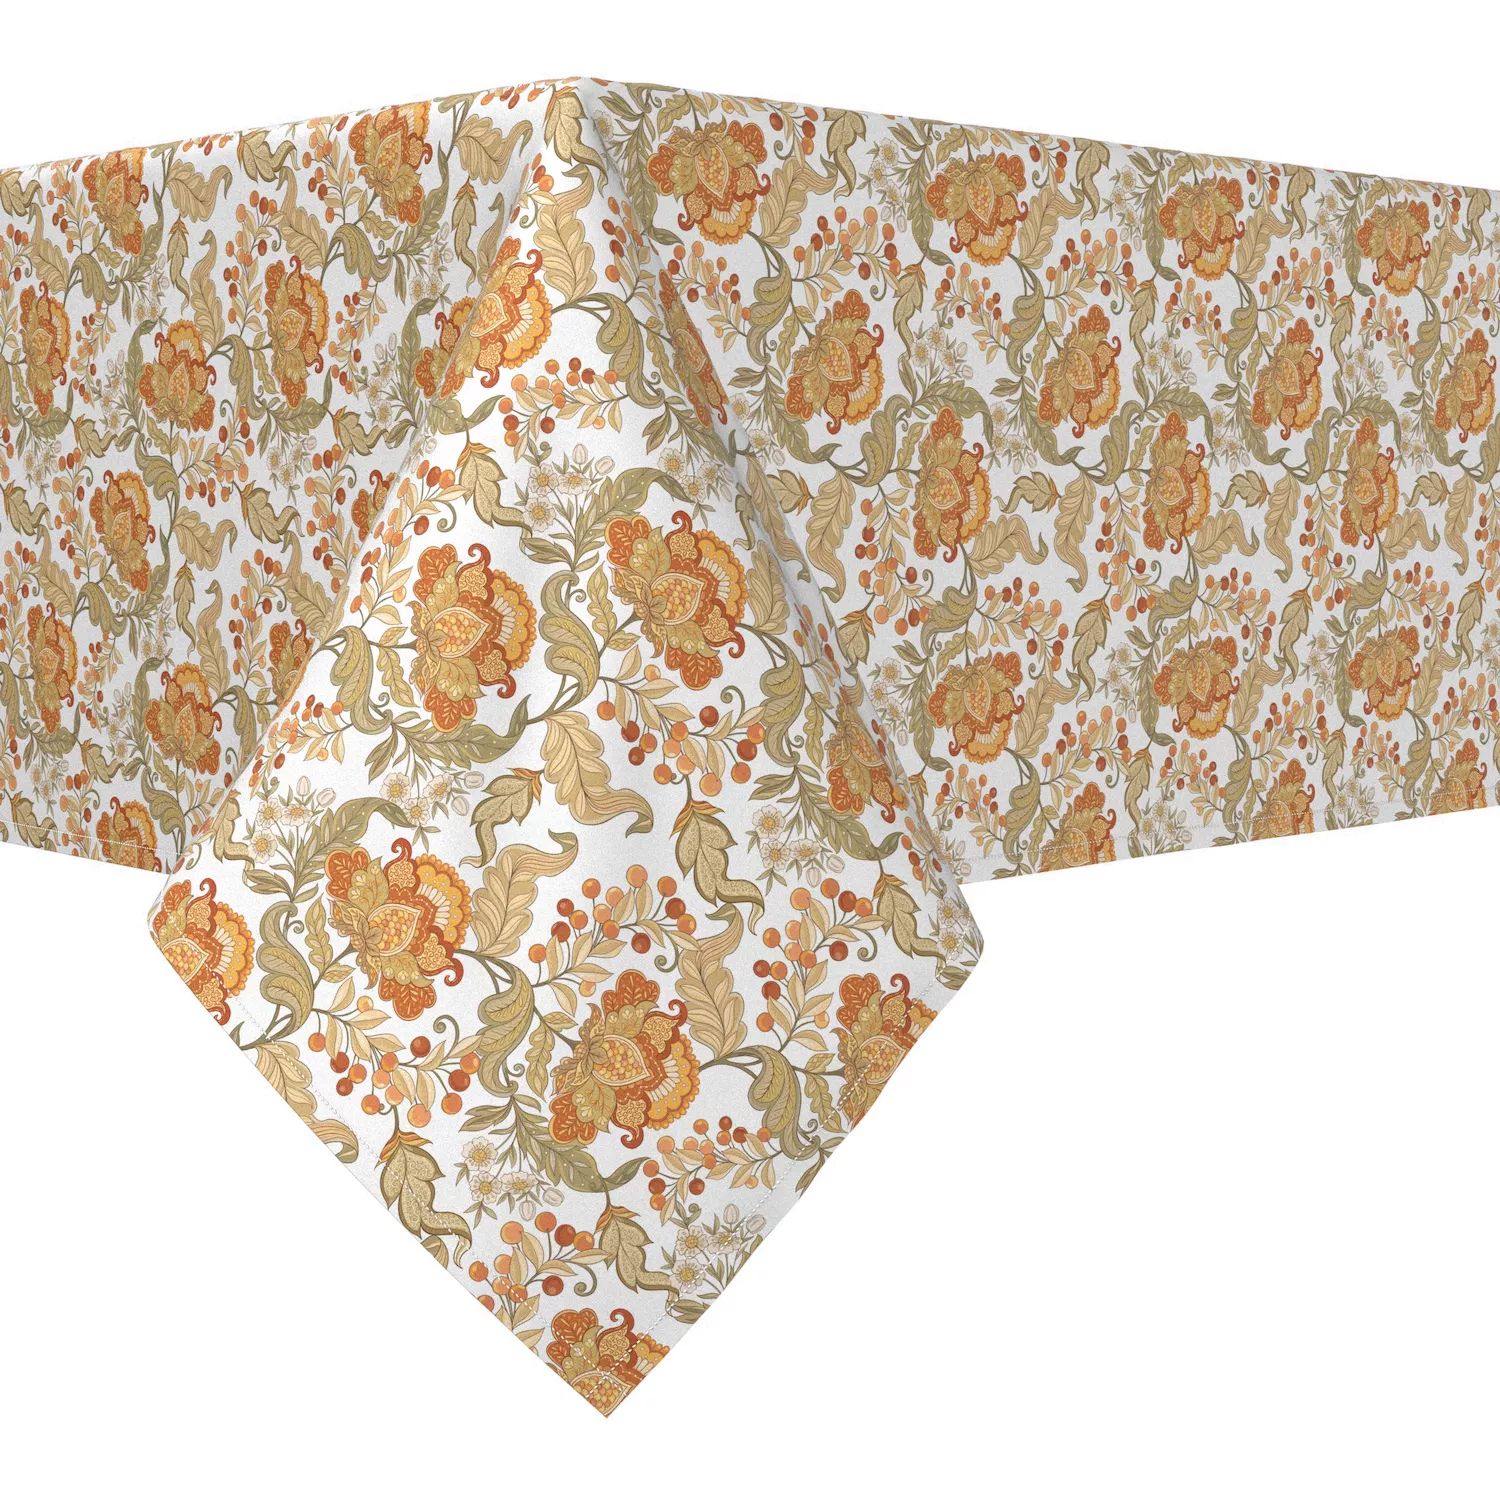 Прямоугольная скатерть, 100 % хлопок, 52x84 дюйма, с цветочным принтом в винтажном стиле. скатерть кружевная в винтажном стиле хлопковая скатерть в клетку прямоугольная для кухни столовой